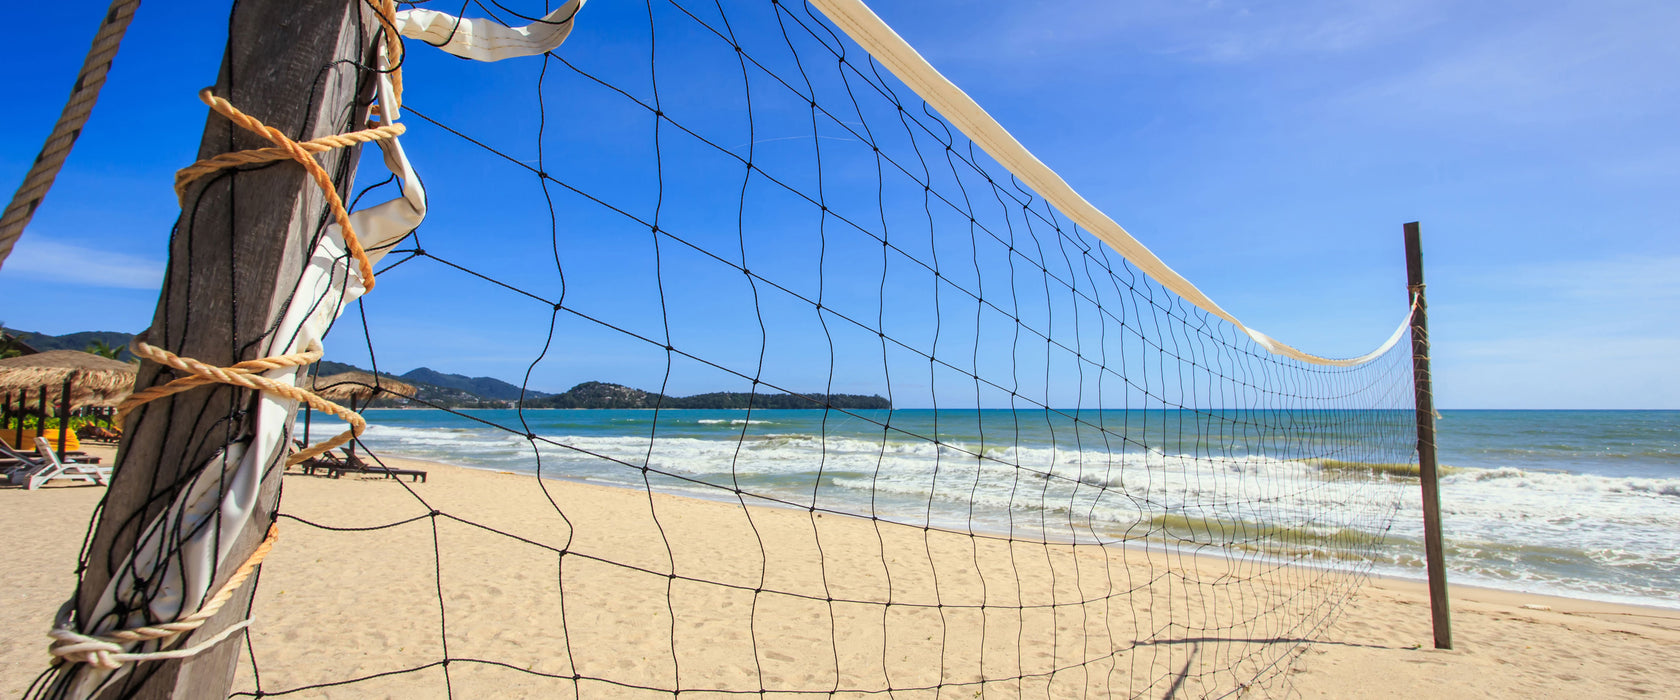 Volleyballnetz am Strand, Glasbild Panorama